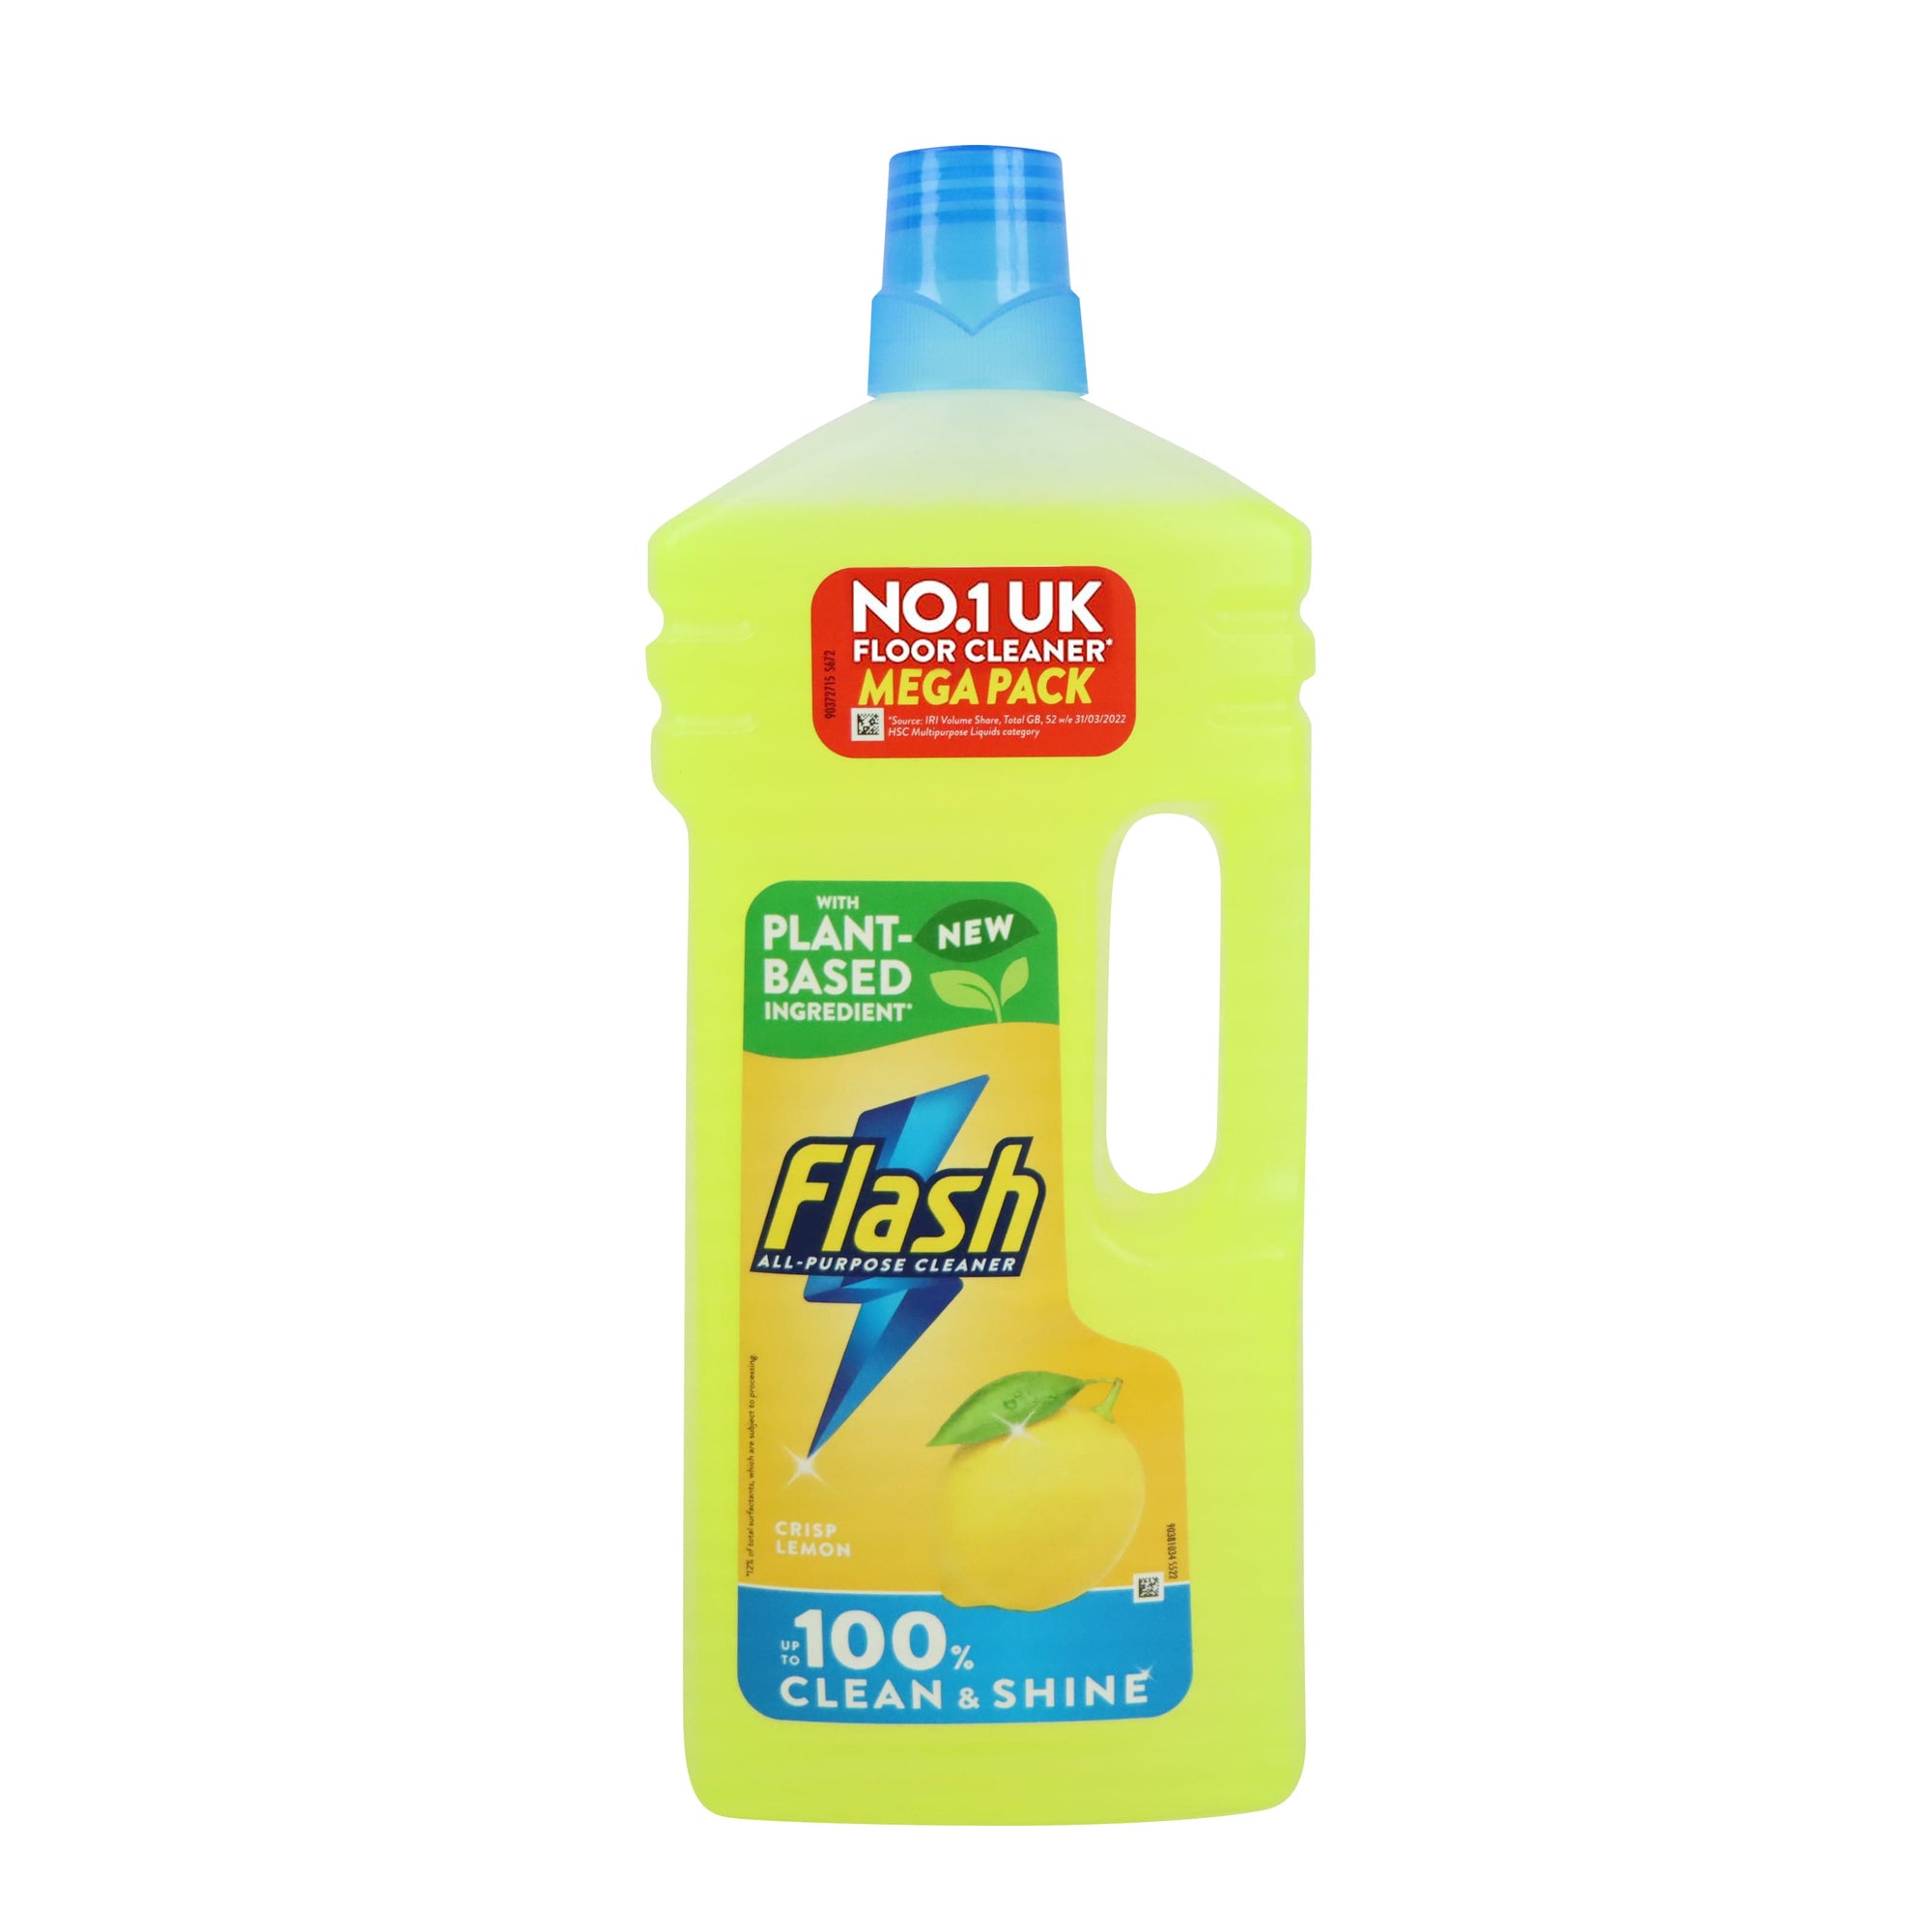 [P&G] Flash All Purpose Floor Cleaner Crisp Lemon 1.5L